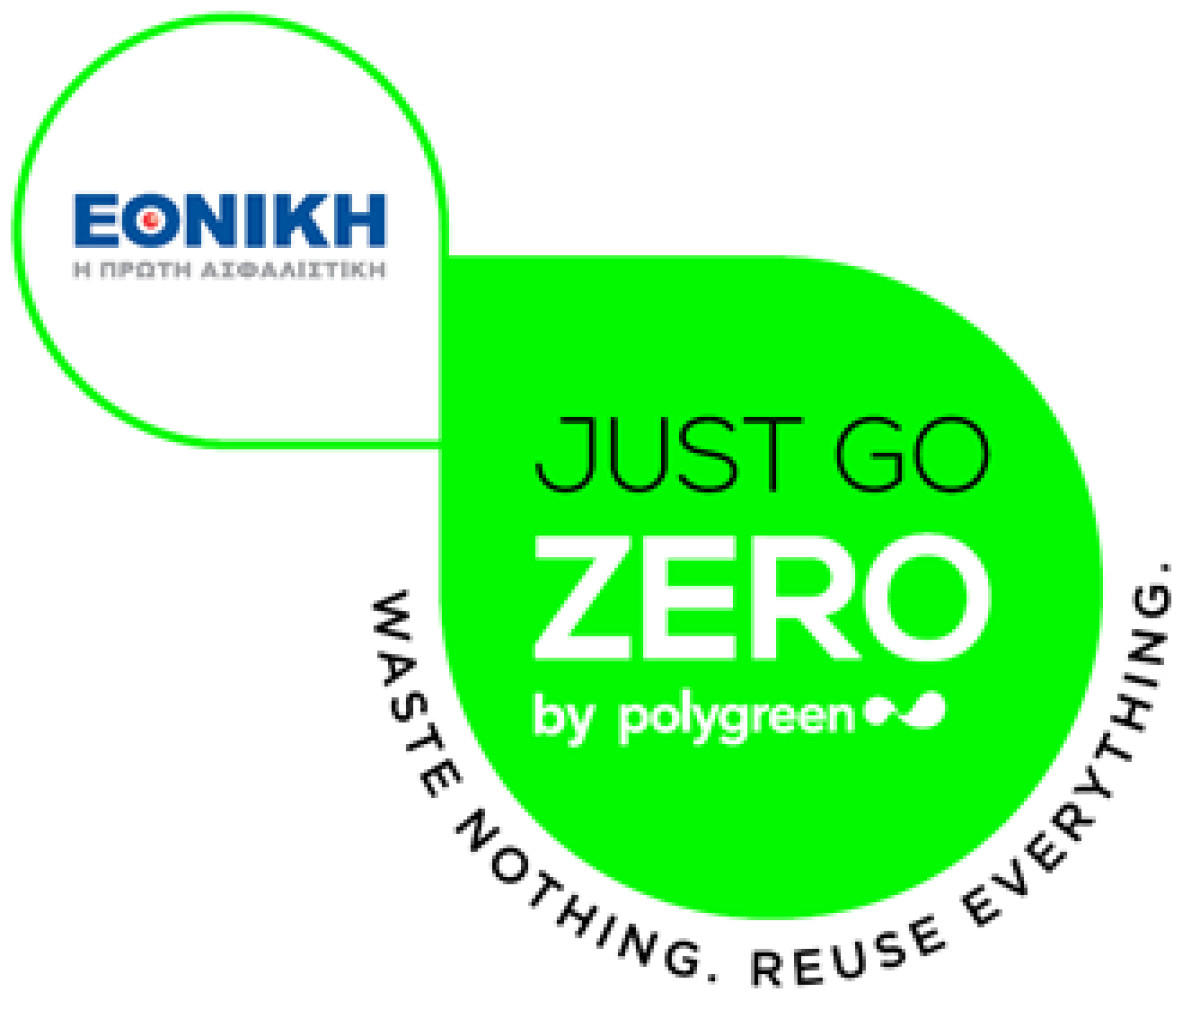 Το πρόγραμμα “Just Go Zero” της POLYGREEN στηρίζει η Εθνική Ασφαλιστική